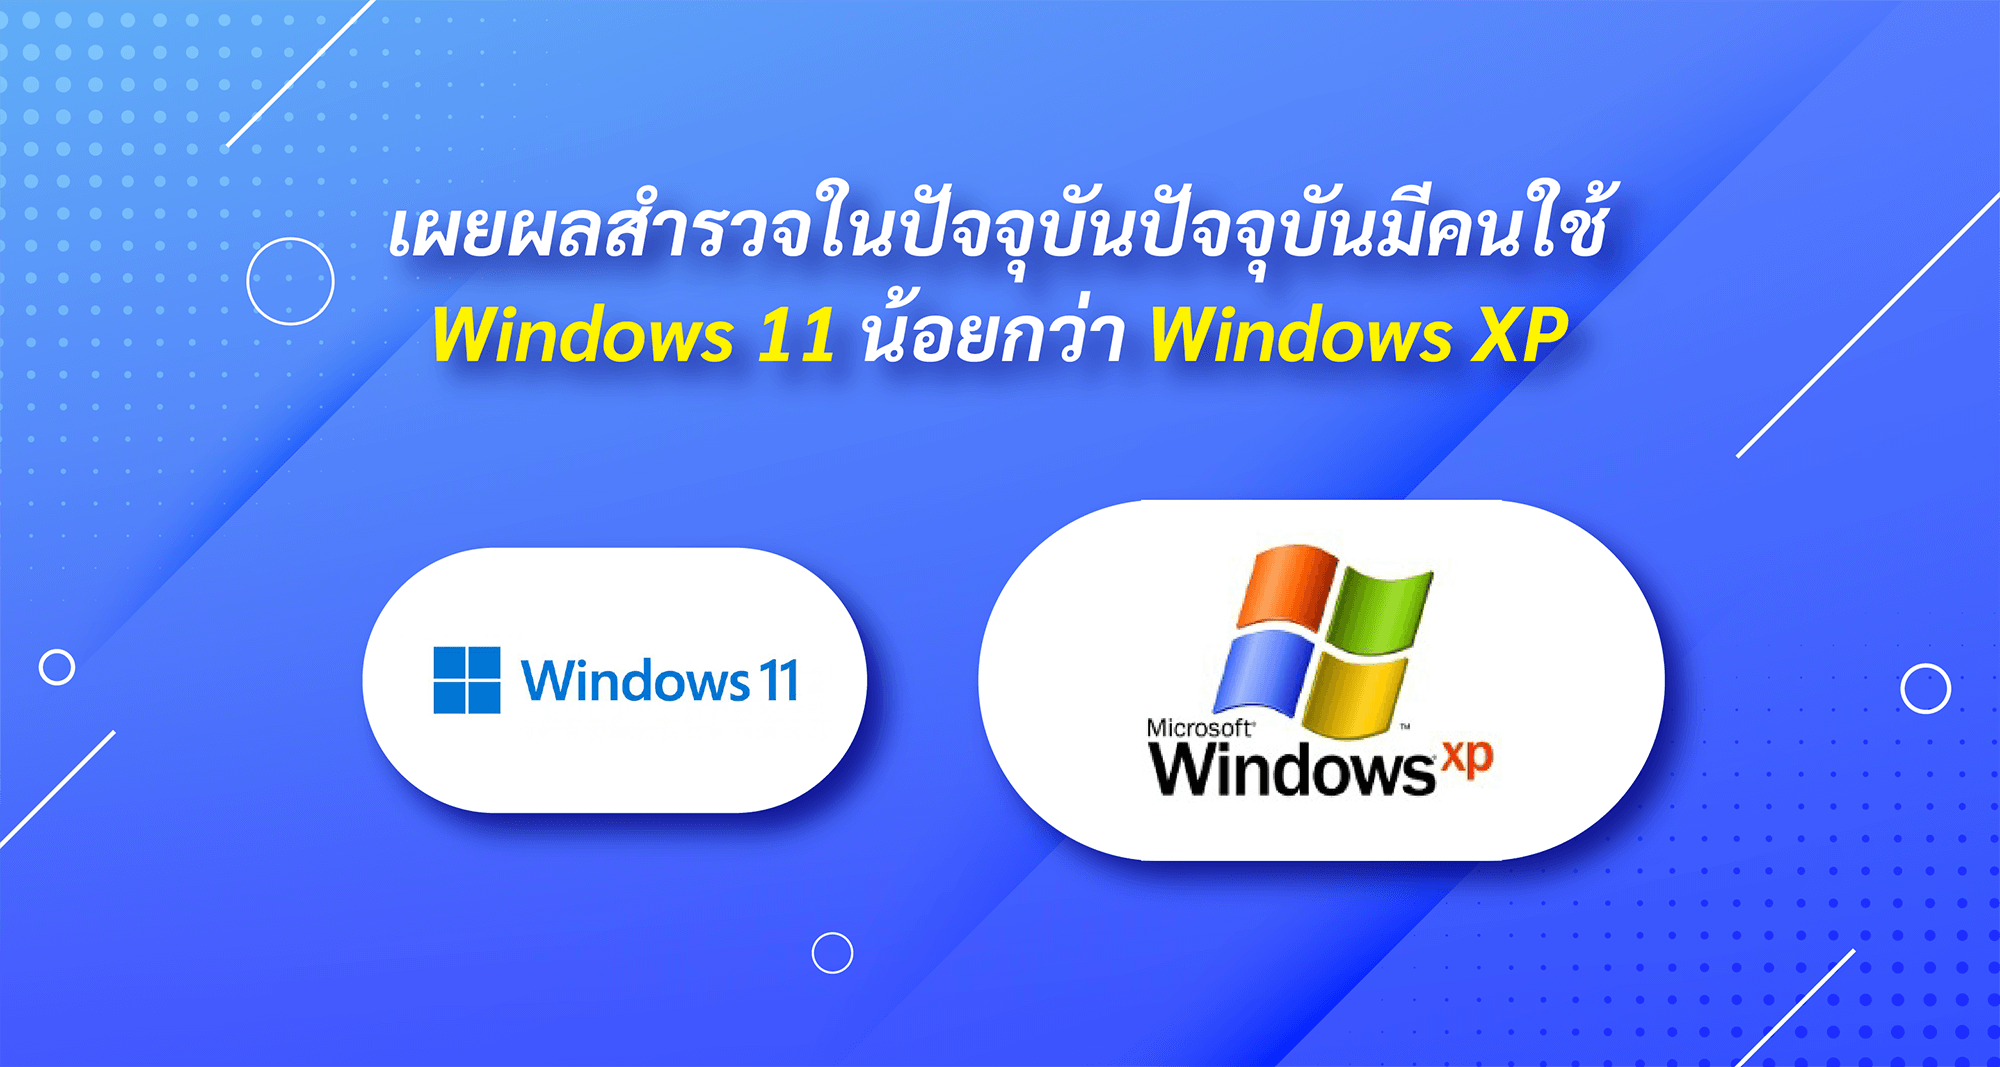 เผยผลสำรวจในปัจจุบันปัจจุบันมีคนใช้ Windows 11 น้อยกว่า Windows XP